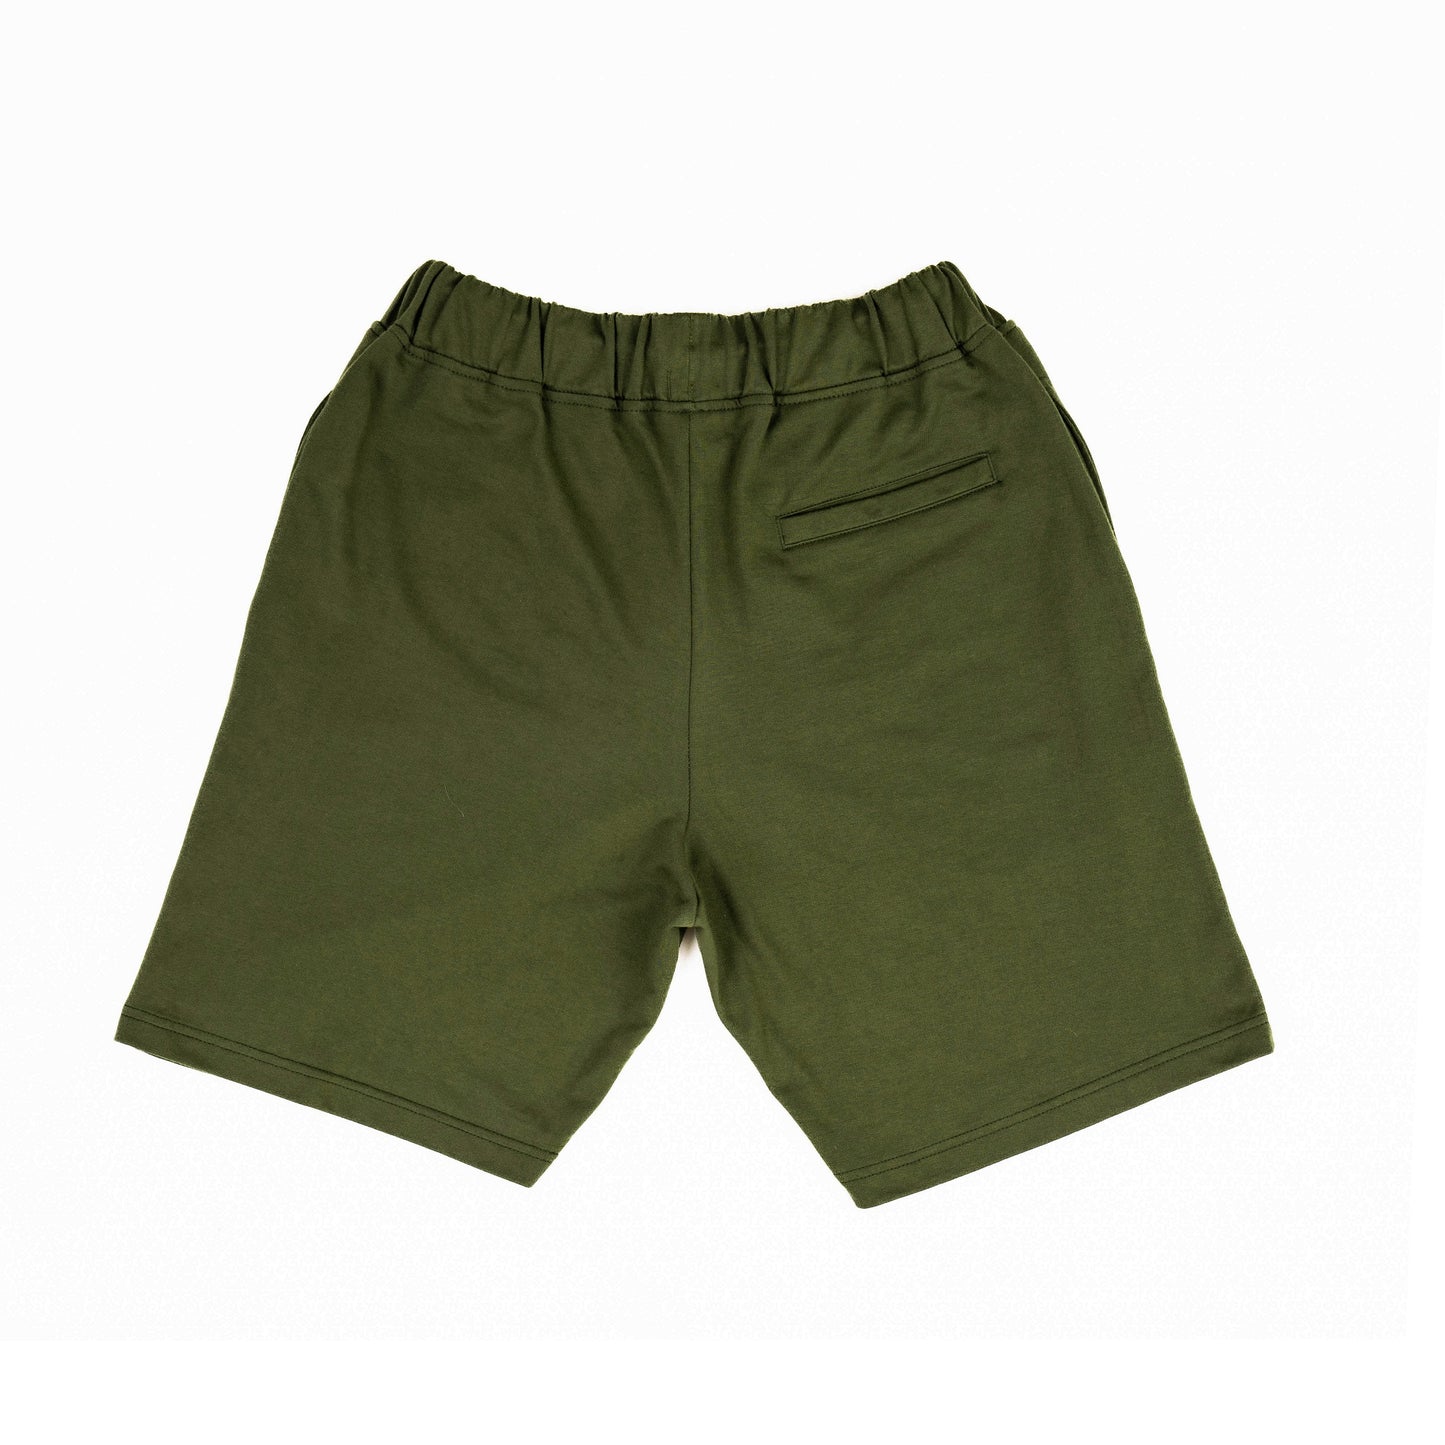 AZA Short Pants Simple Basic - Olive